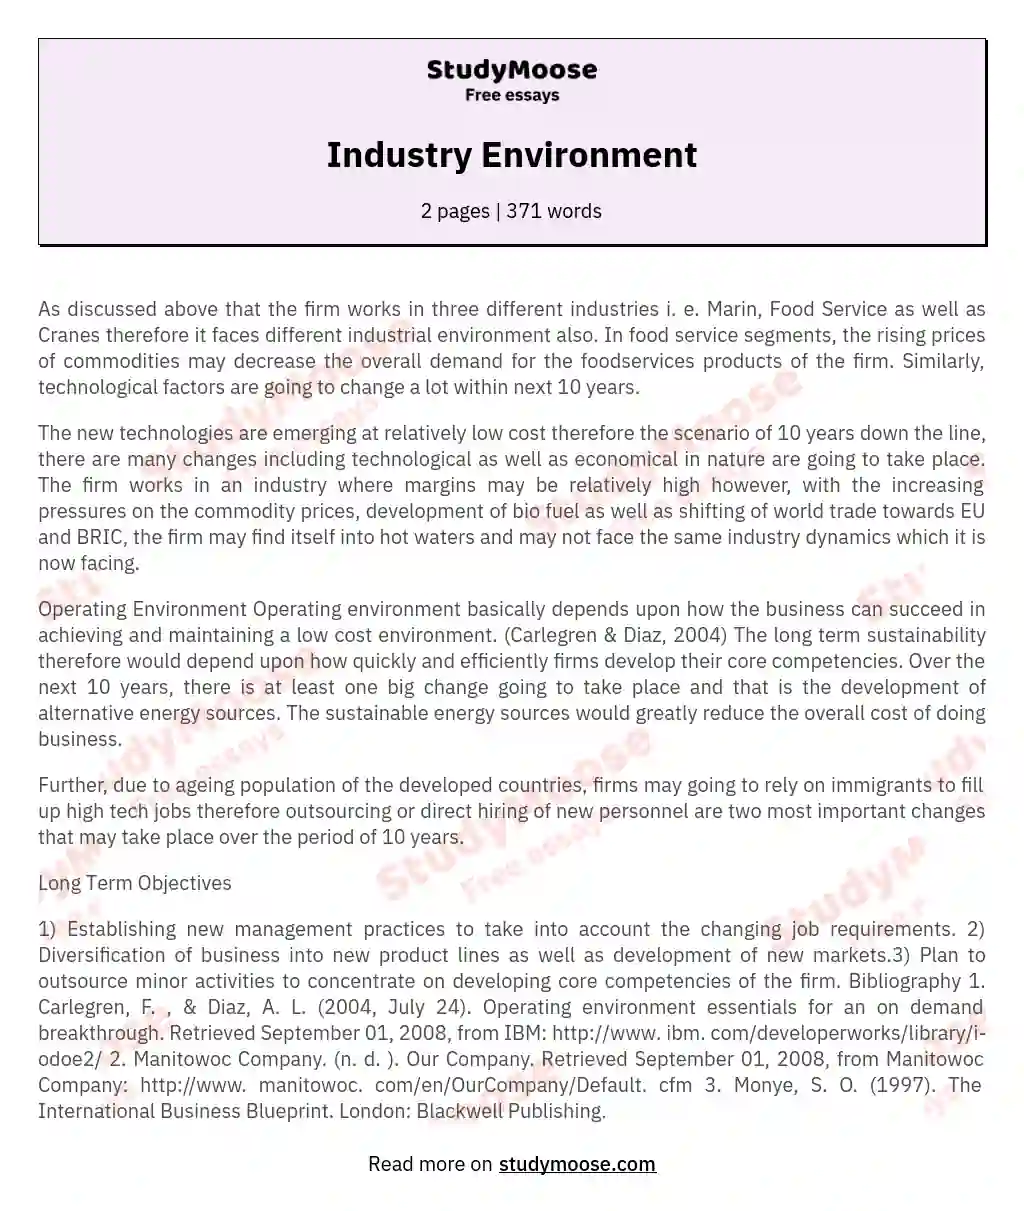 Industry Environment essay